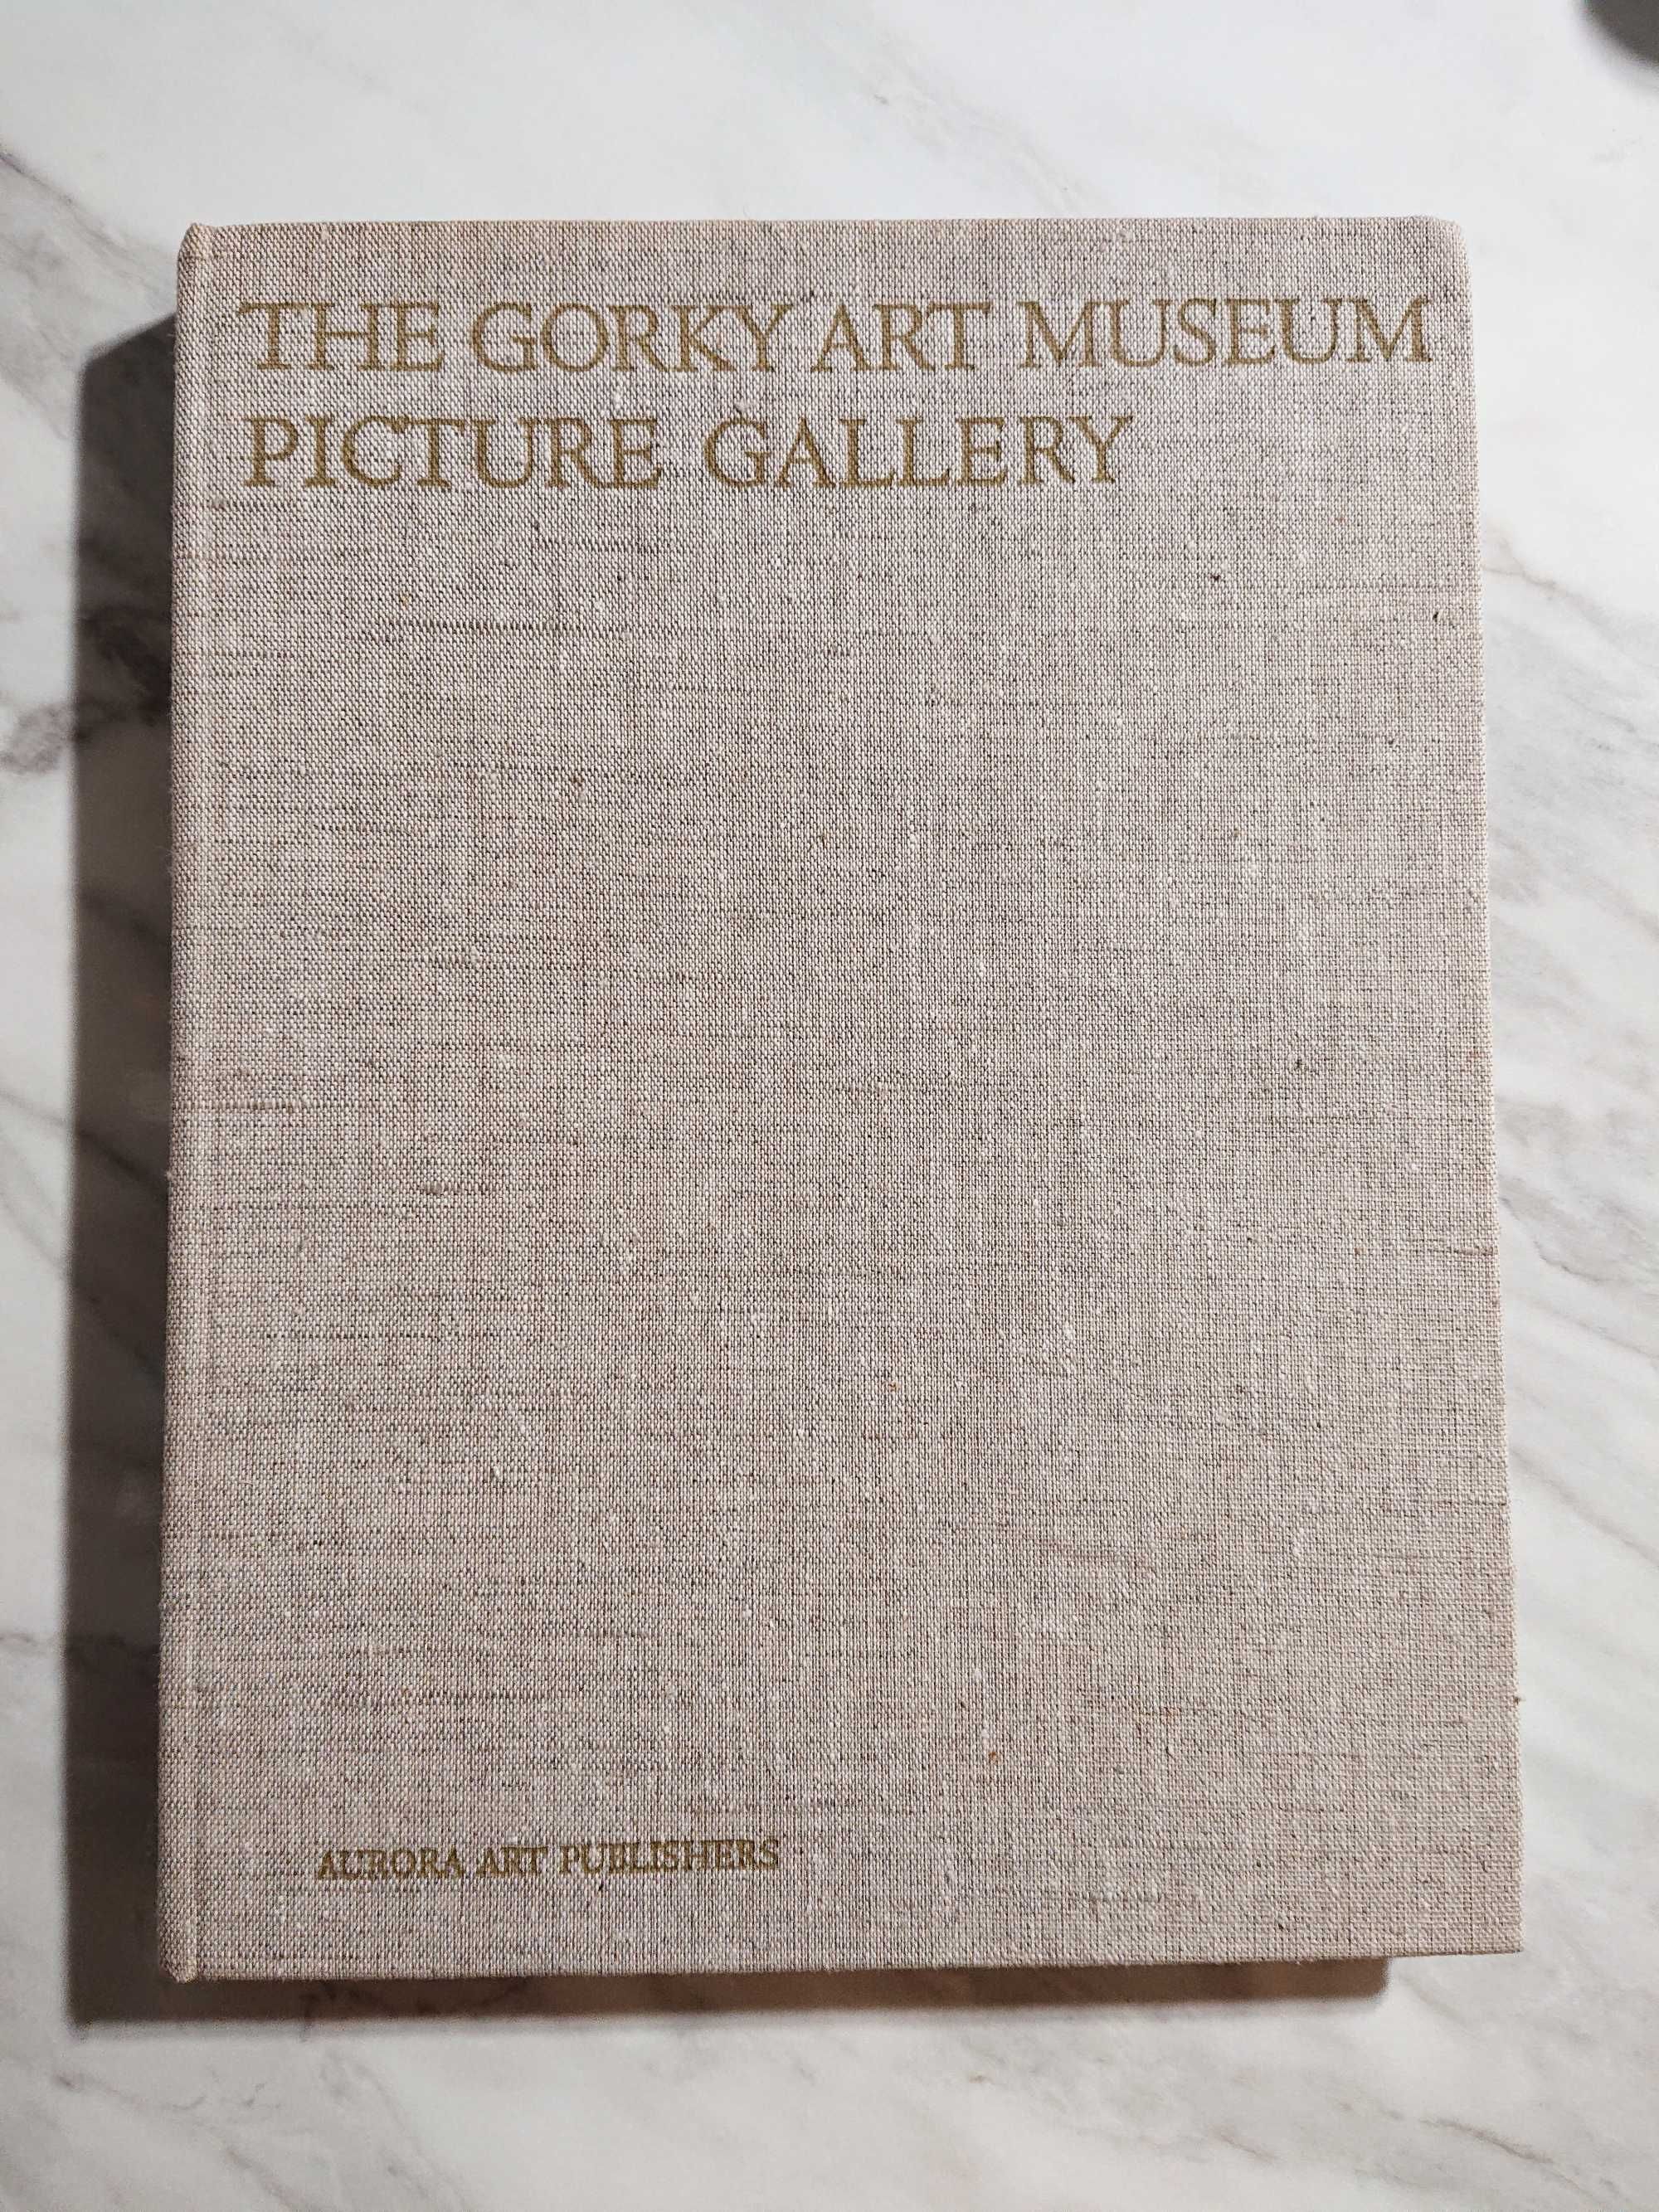 The Gorky Art Museum picture gallery język rosyjski